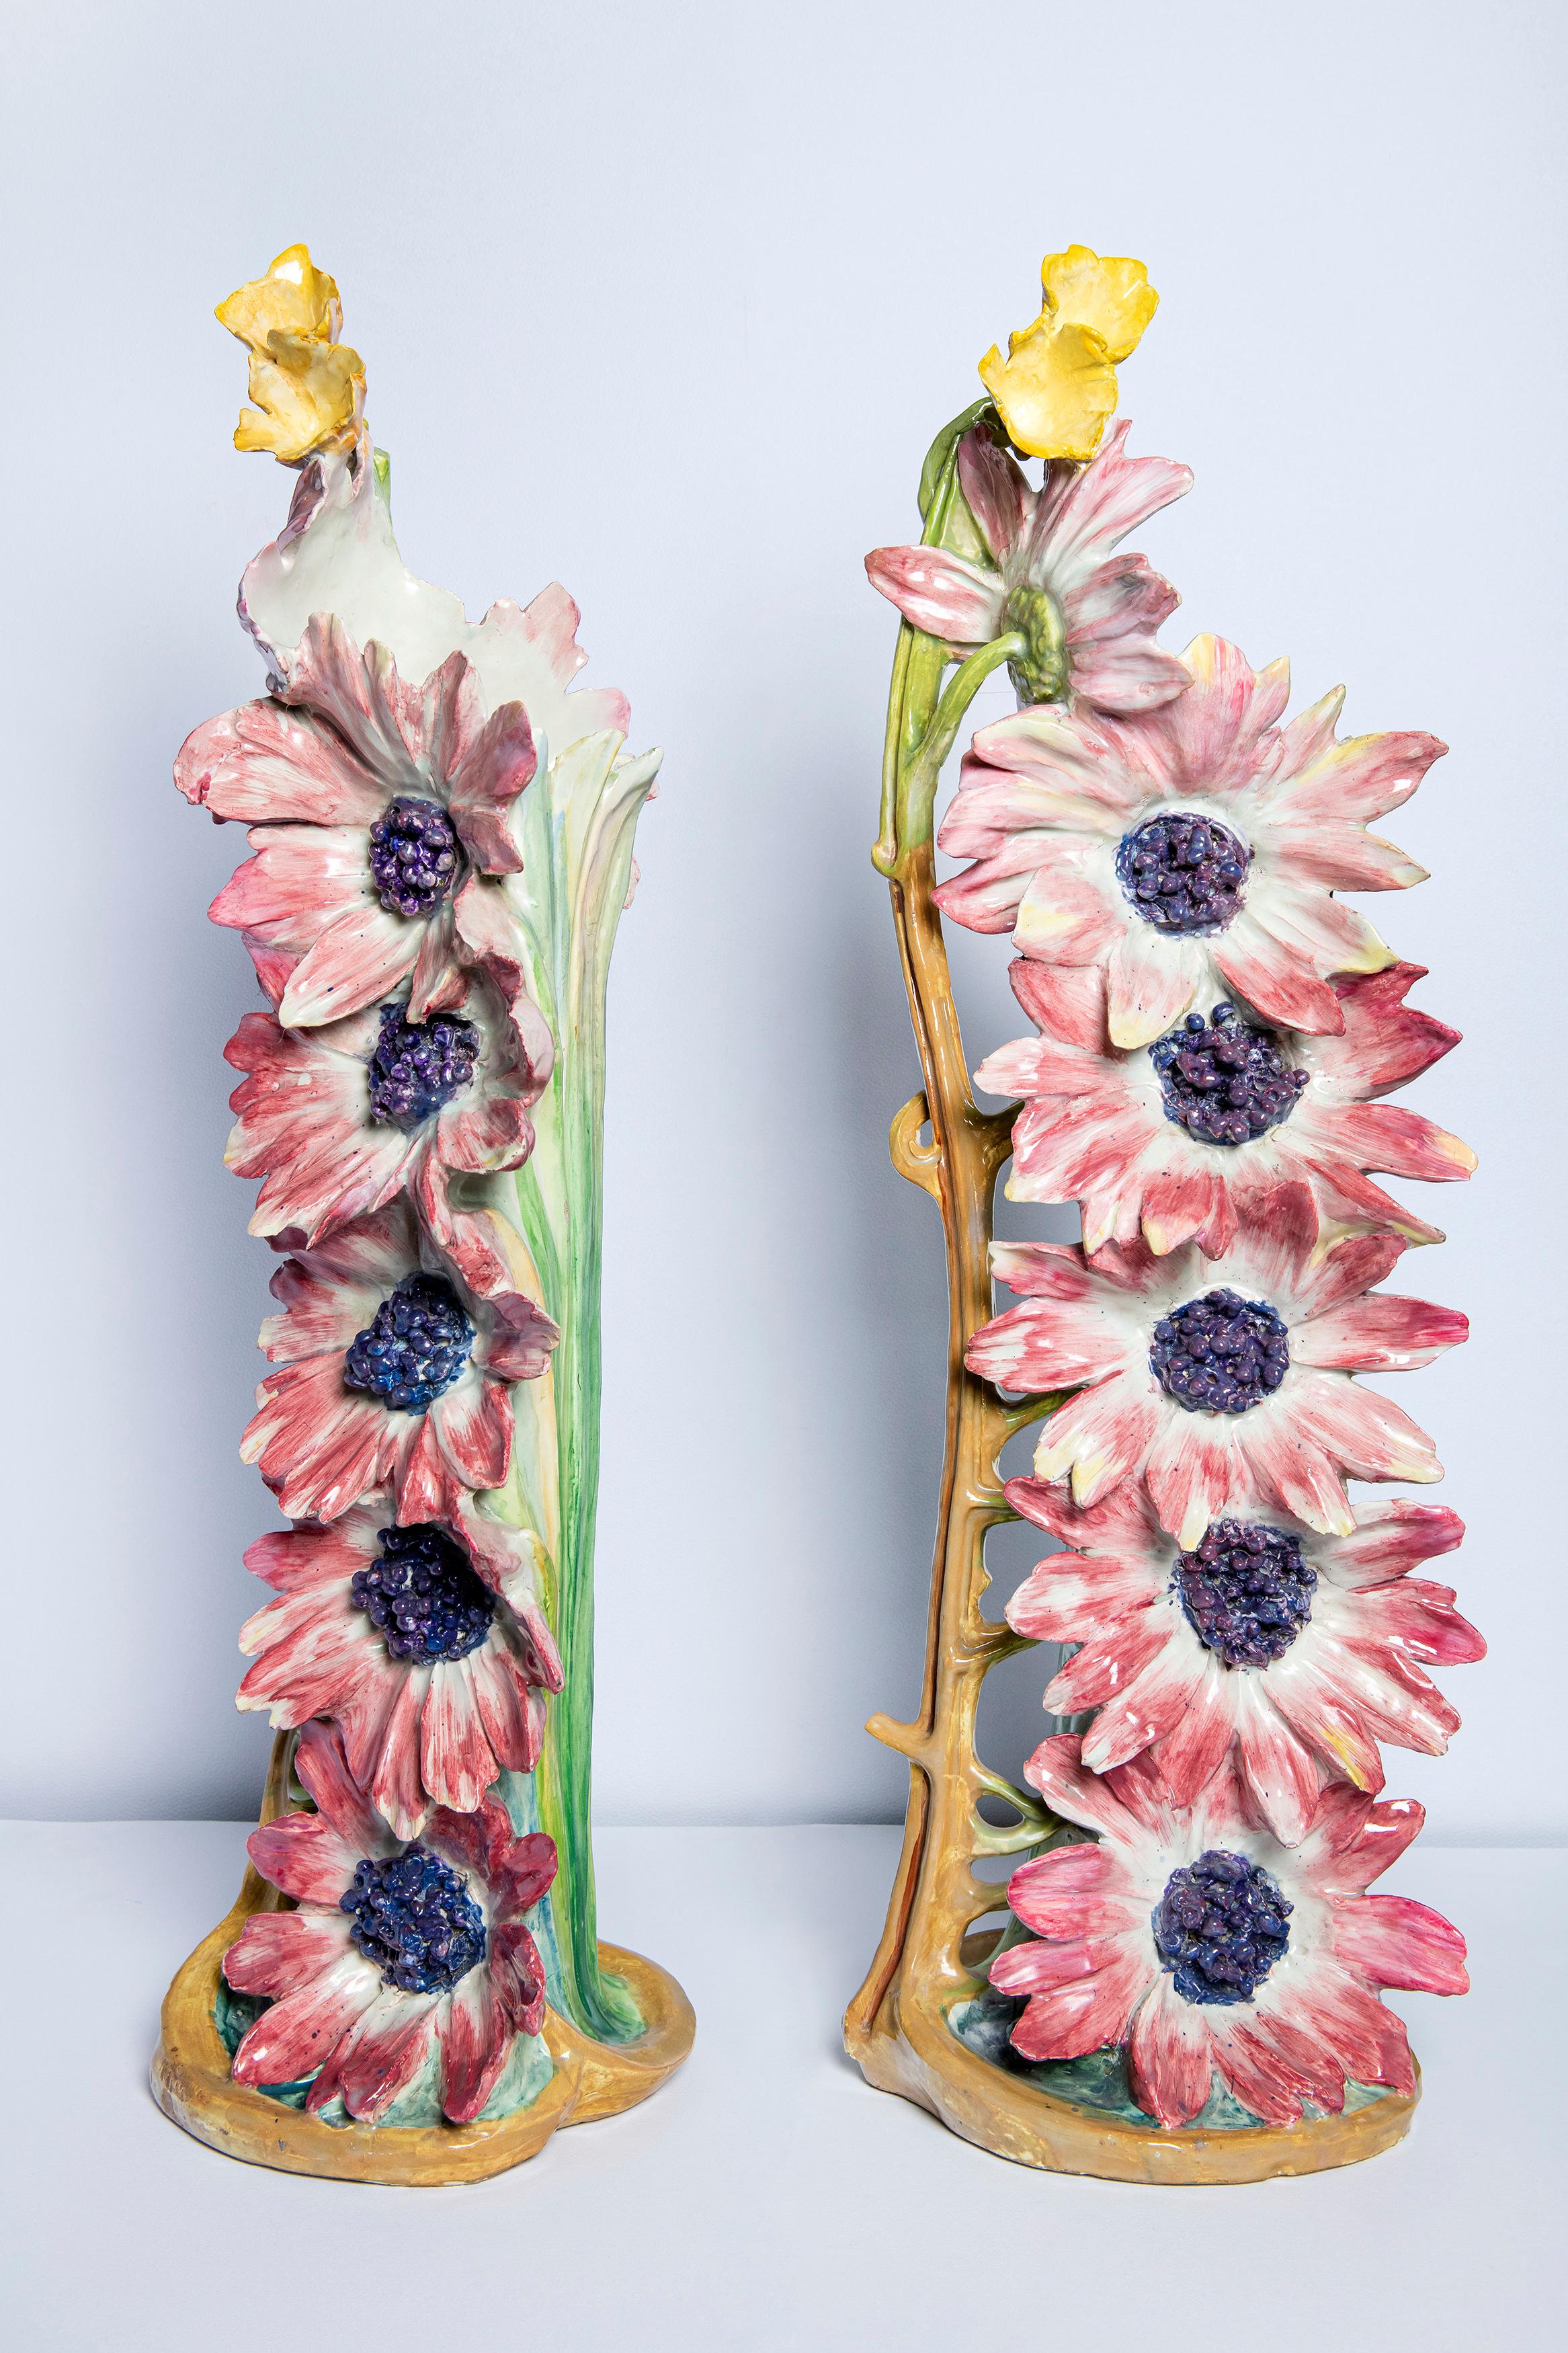 Pair of glazed ceramic flower vases by Delphin Massier, France, circa 1890.